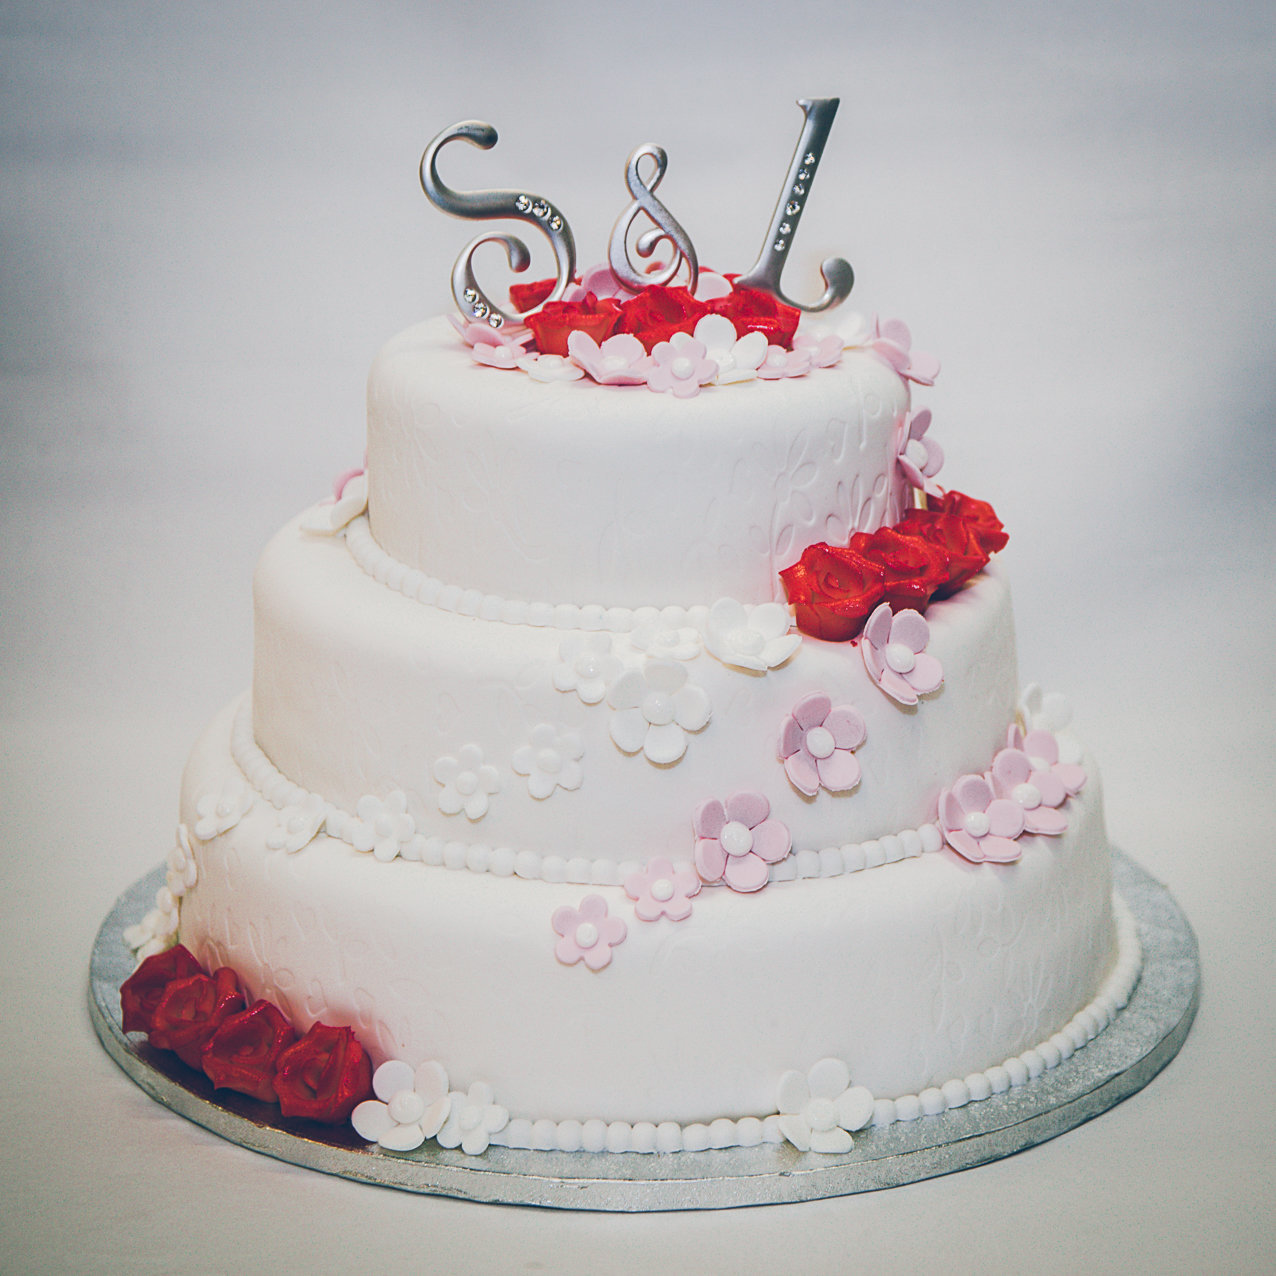 Witte bruidstaart met rode en roze bloemen van Banketbakkerij van den Berg